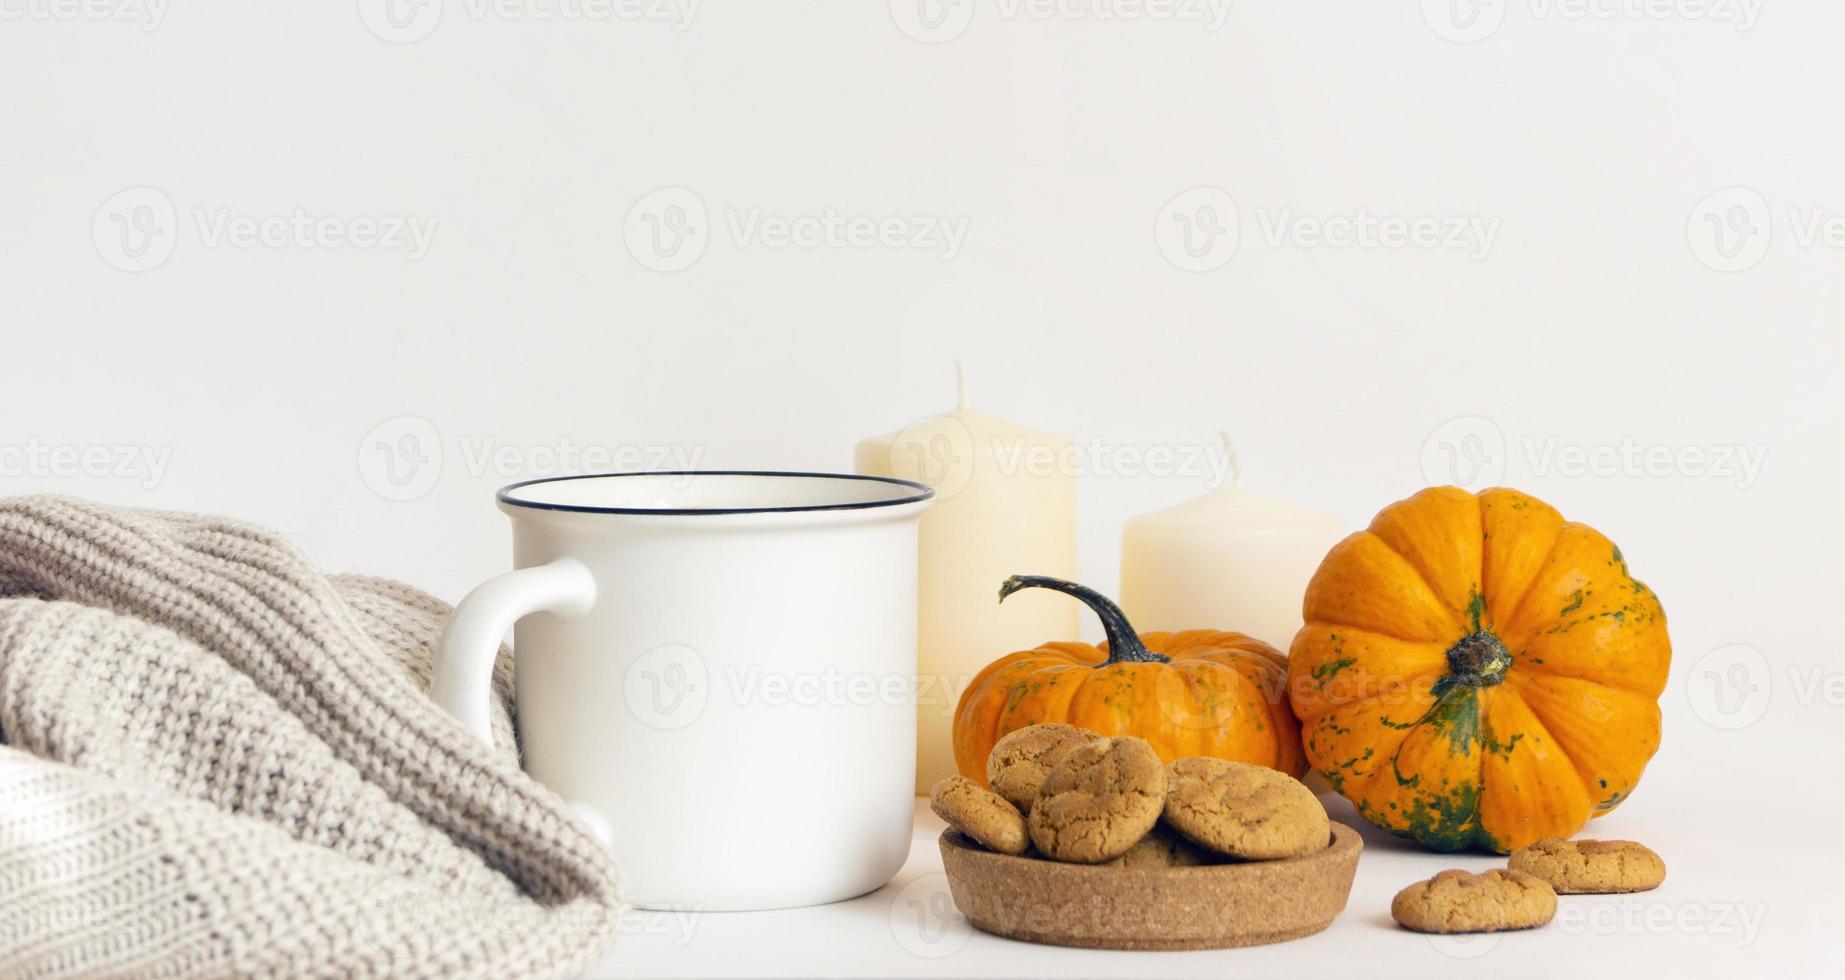 caffè mattutino, atmosfera autunnale. tazza, sciarpa, biscotti, zucche e candele su un tavolo bianco foto